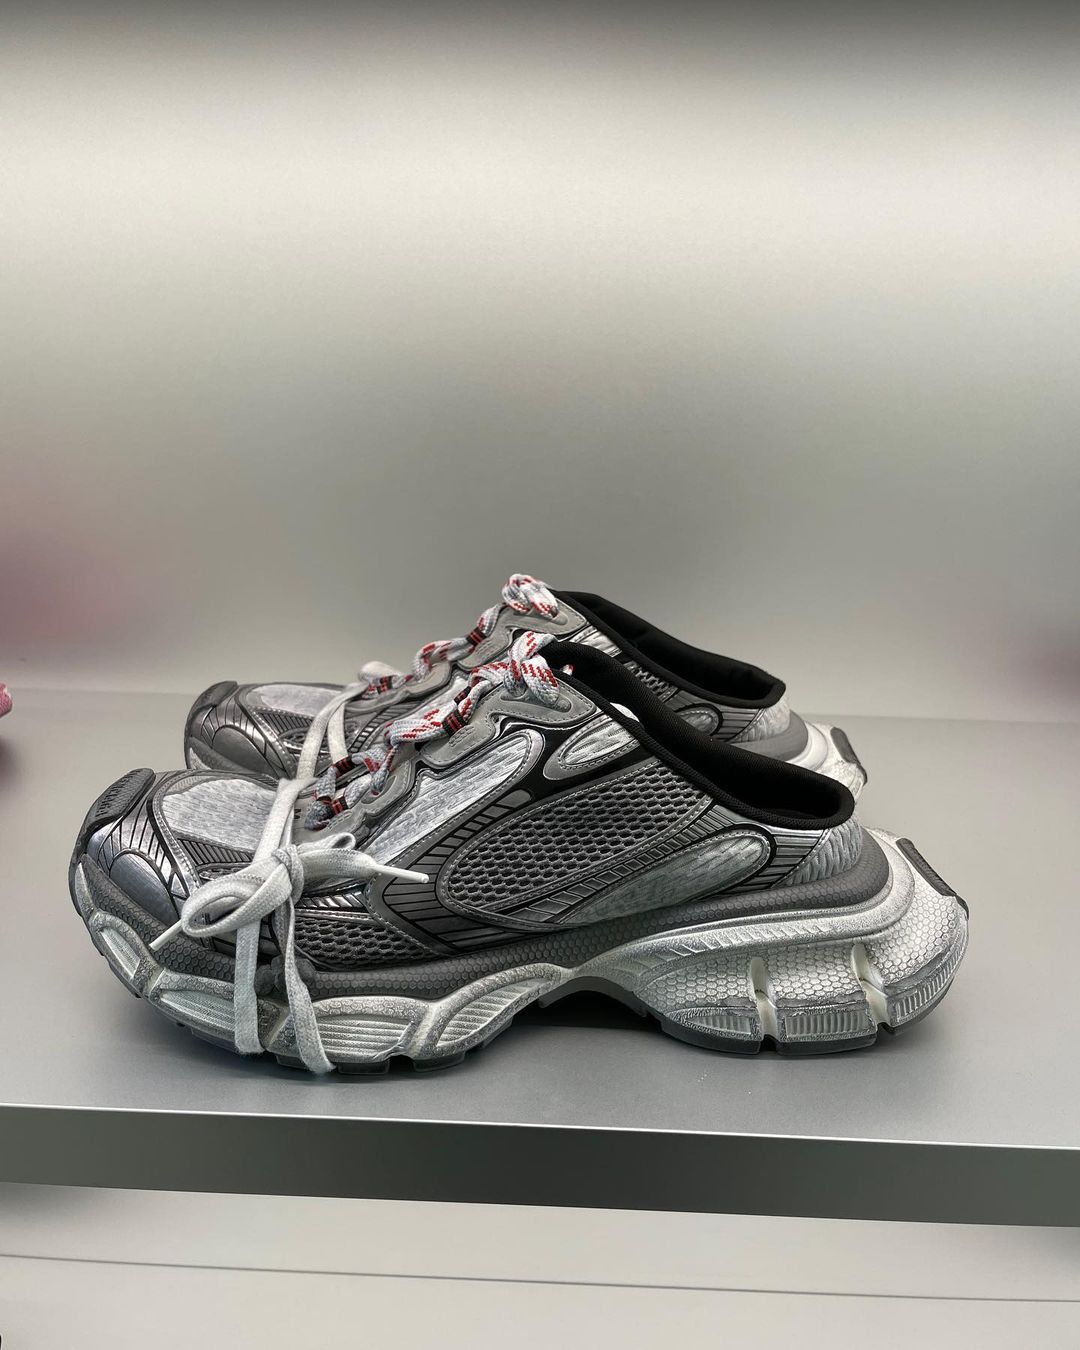 La zapatilla XL de Balenciaga transformada: ¿Zueco 3XL, la próxima tendencia en calzado?